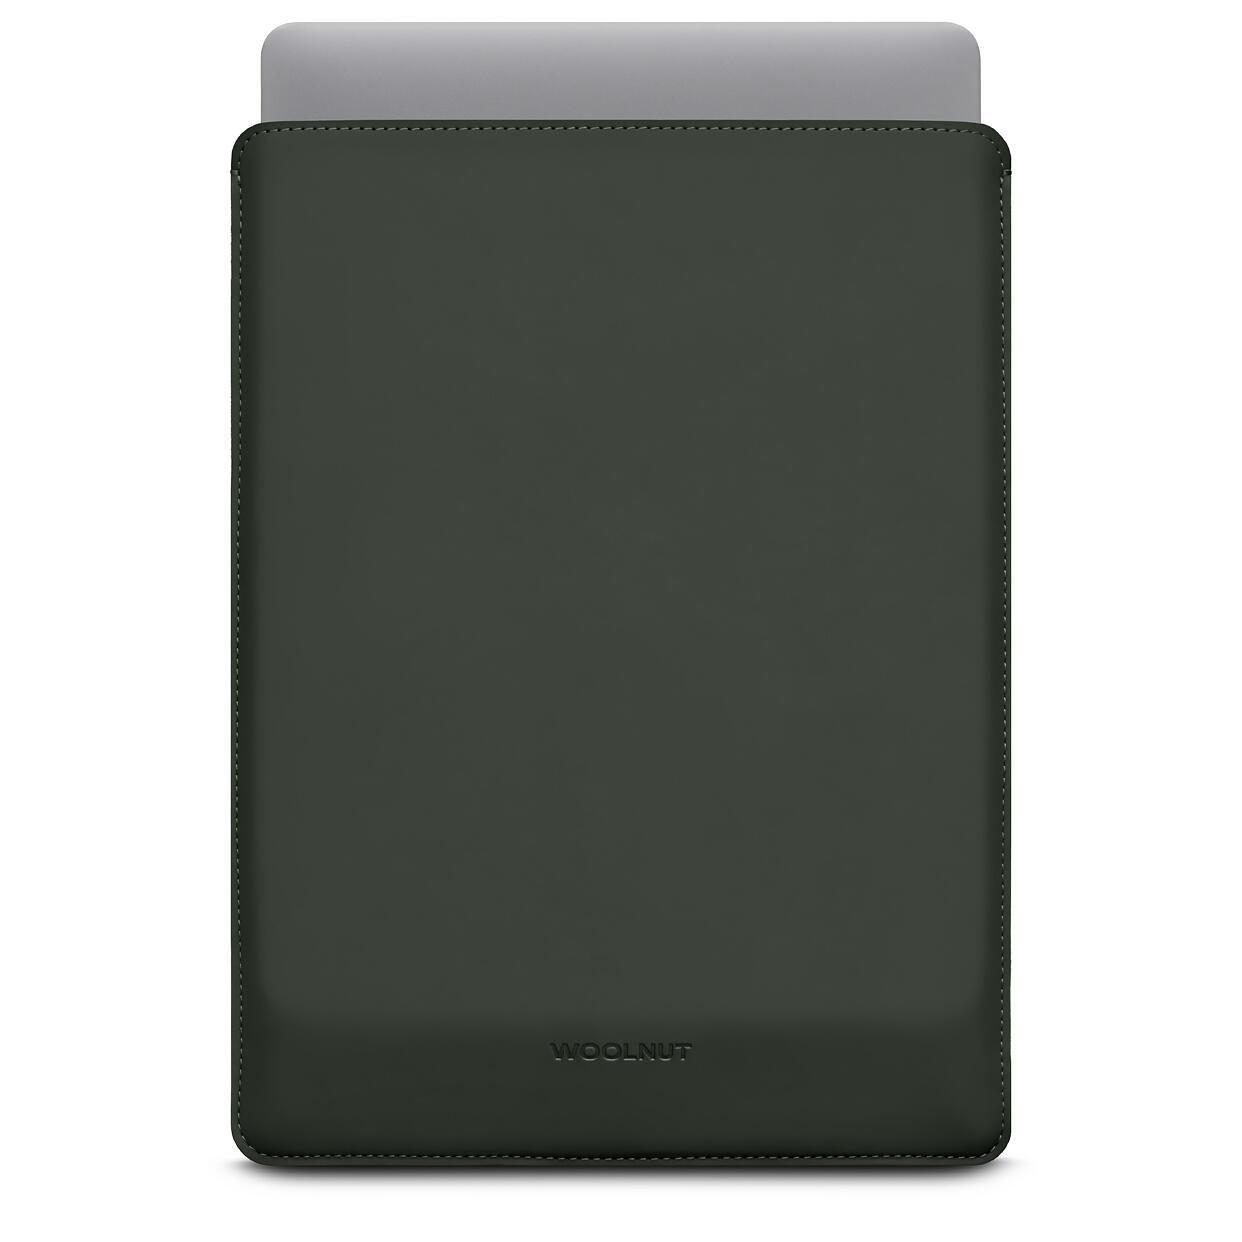 Woolnut beschichtete Hülle für MacBook Pro 14", grün von Woolnut